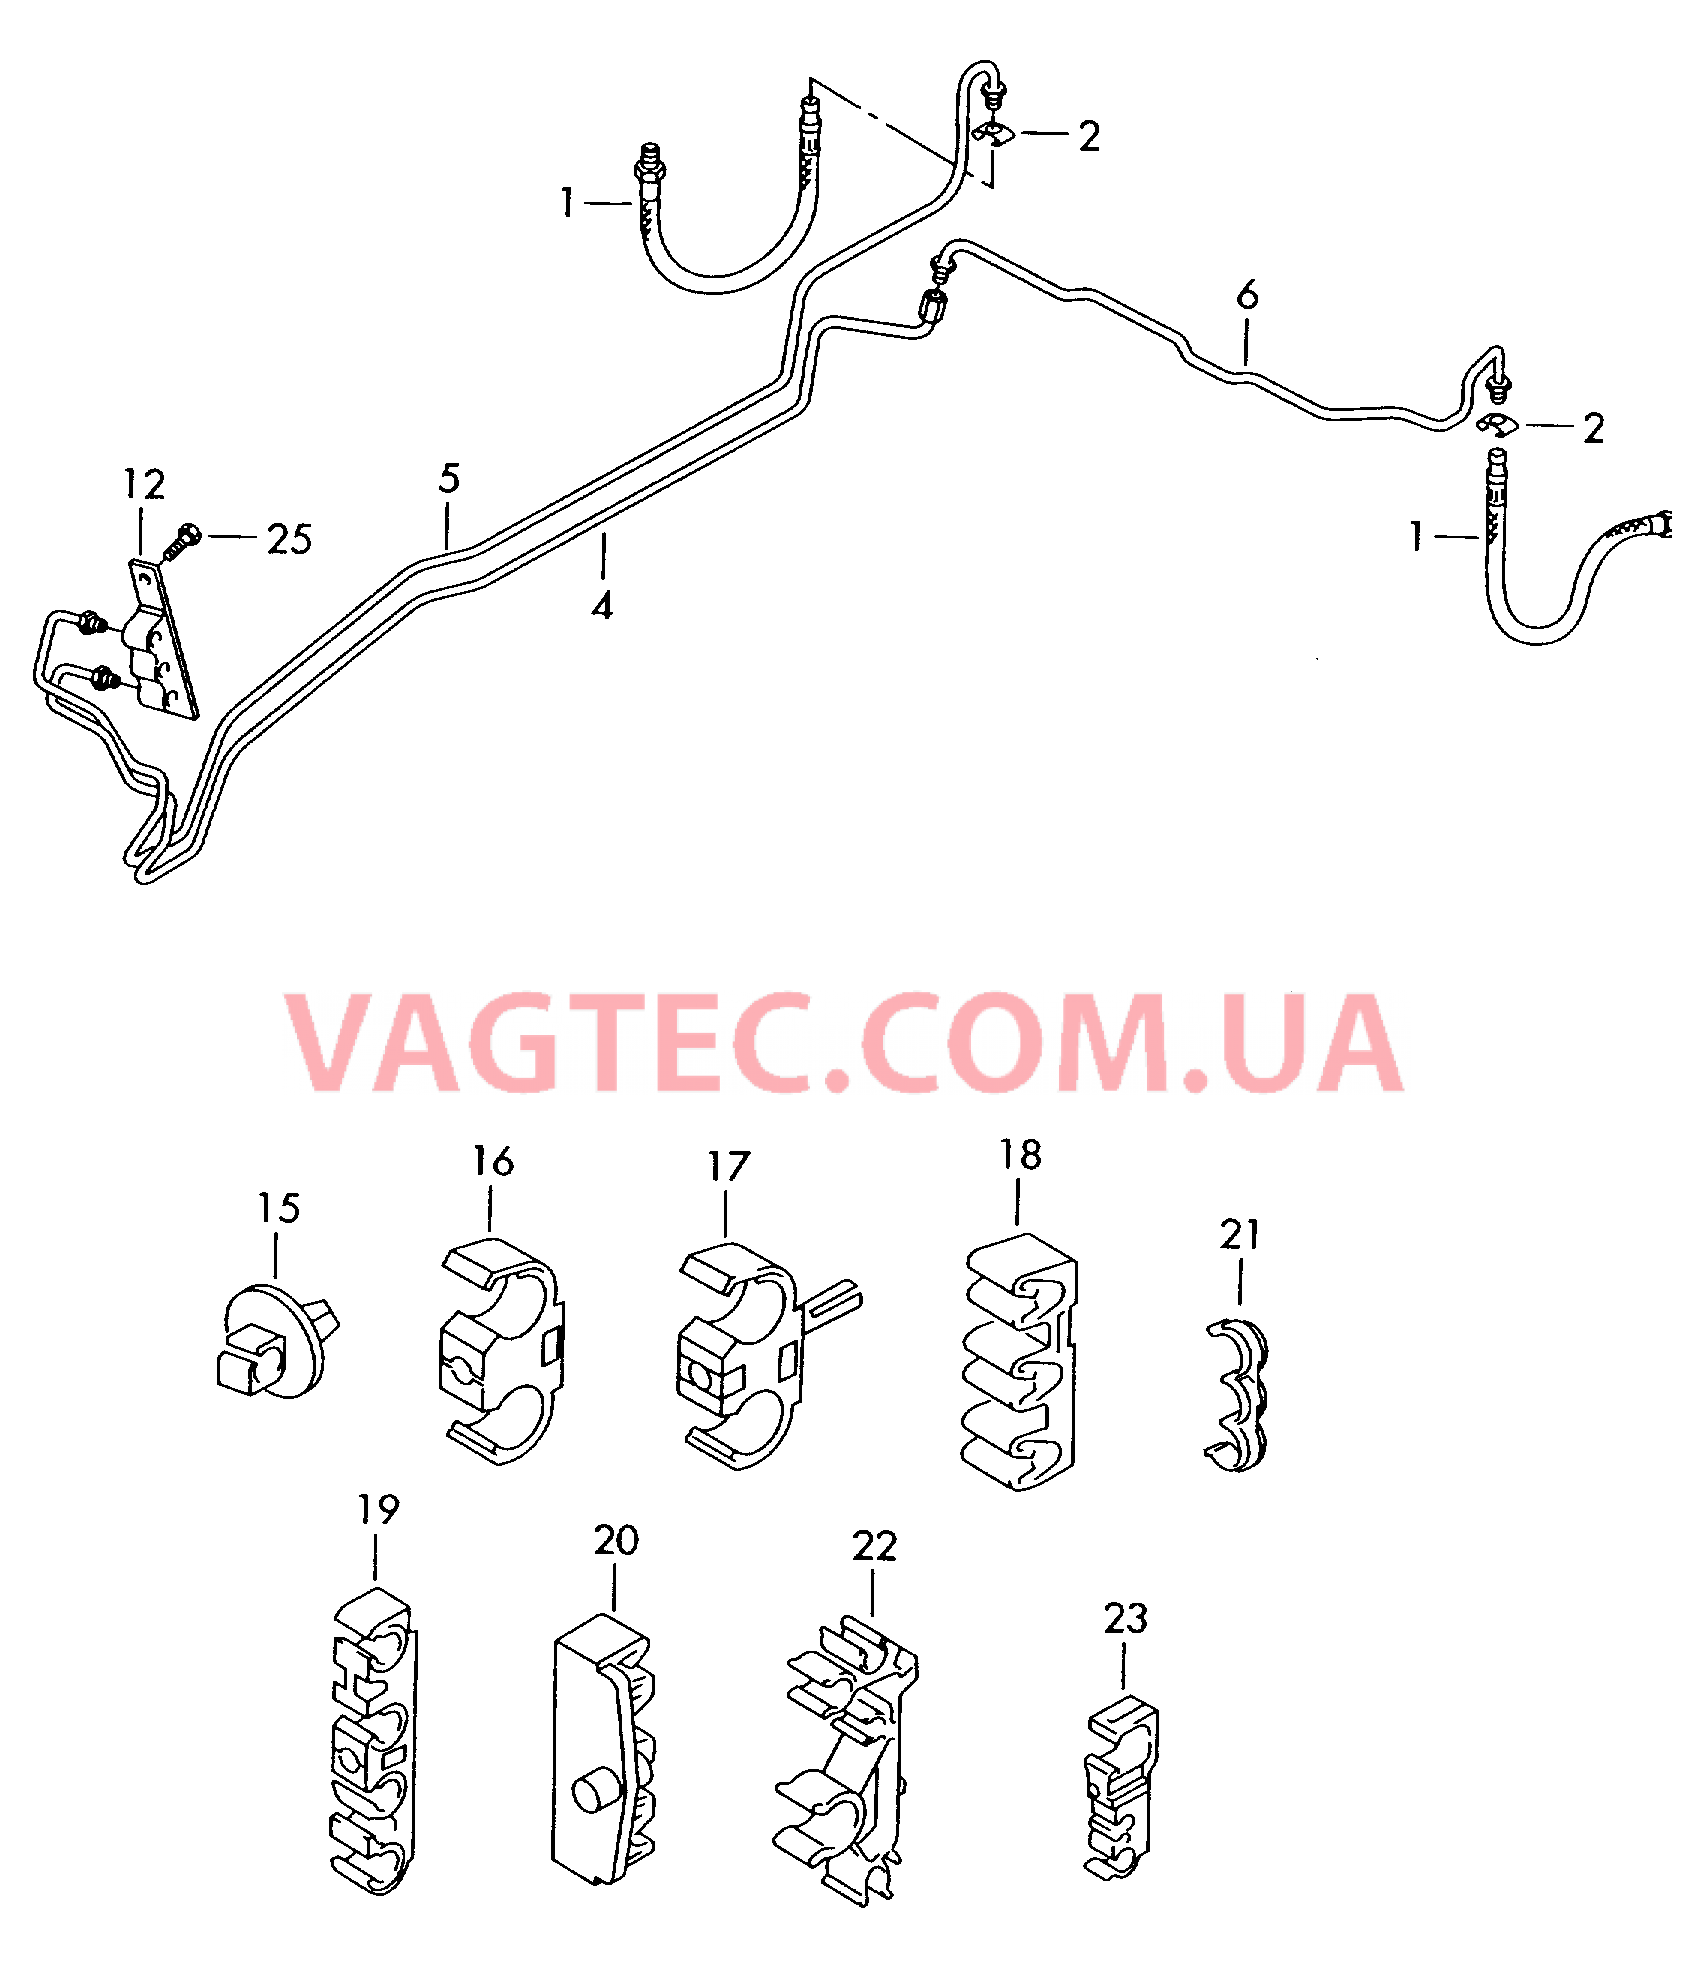 Тормозная трубка Тормозной шланг  для VOLKSWAGEN Touareg 2005